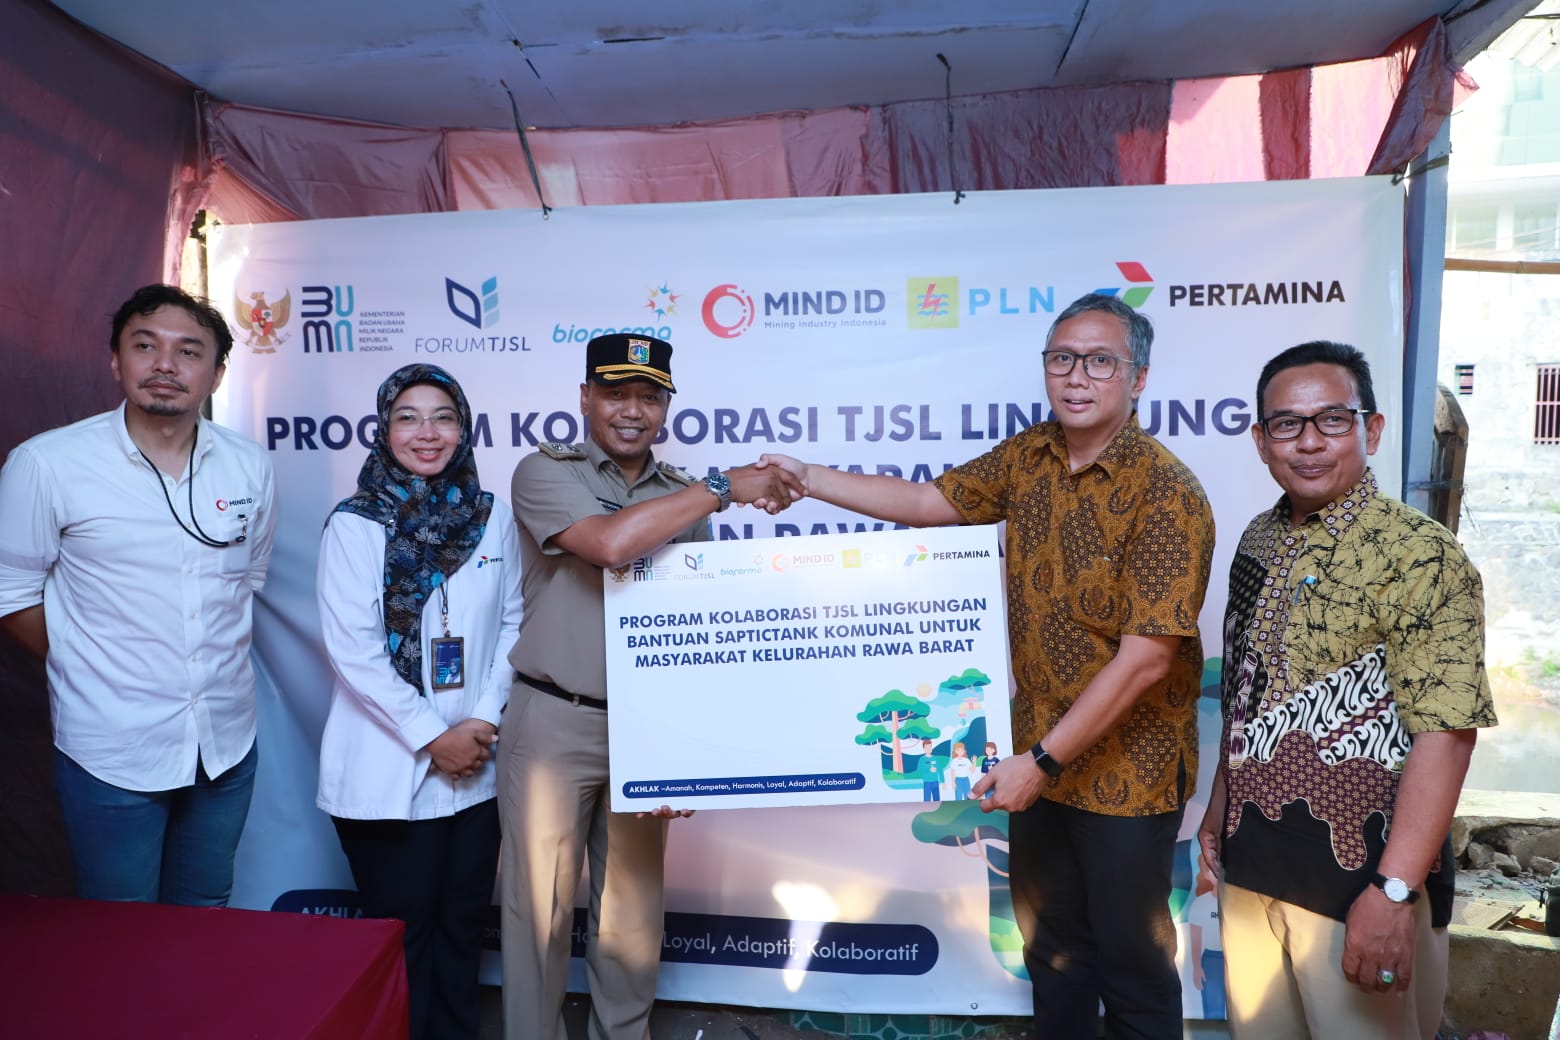 Kolaborasi Antar BUMN, Pertamina Dukung Peningkatan Kualitas Sanitasi Komunal Warga Kelurahan Rawa Barat 